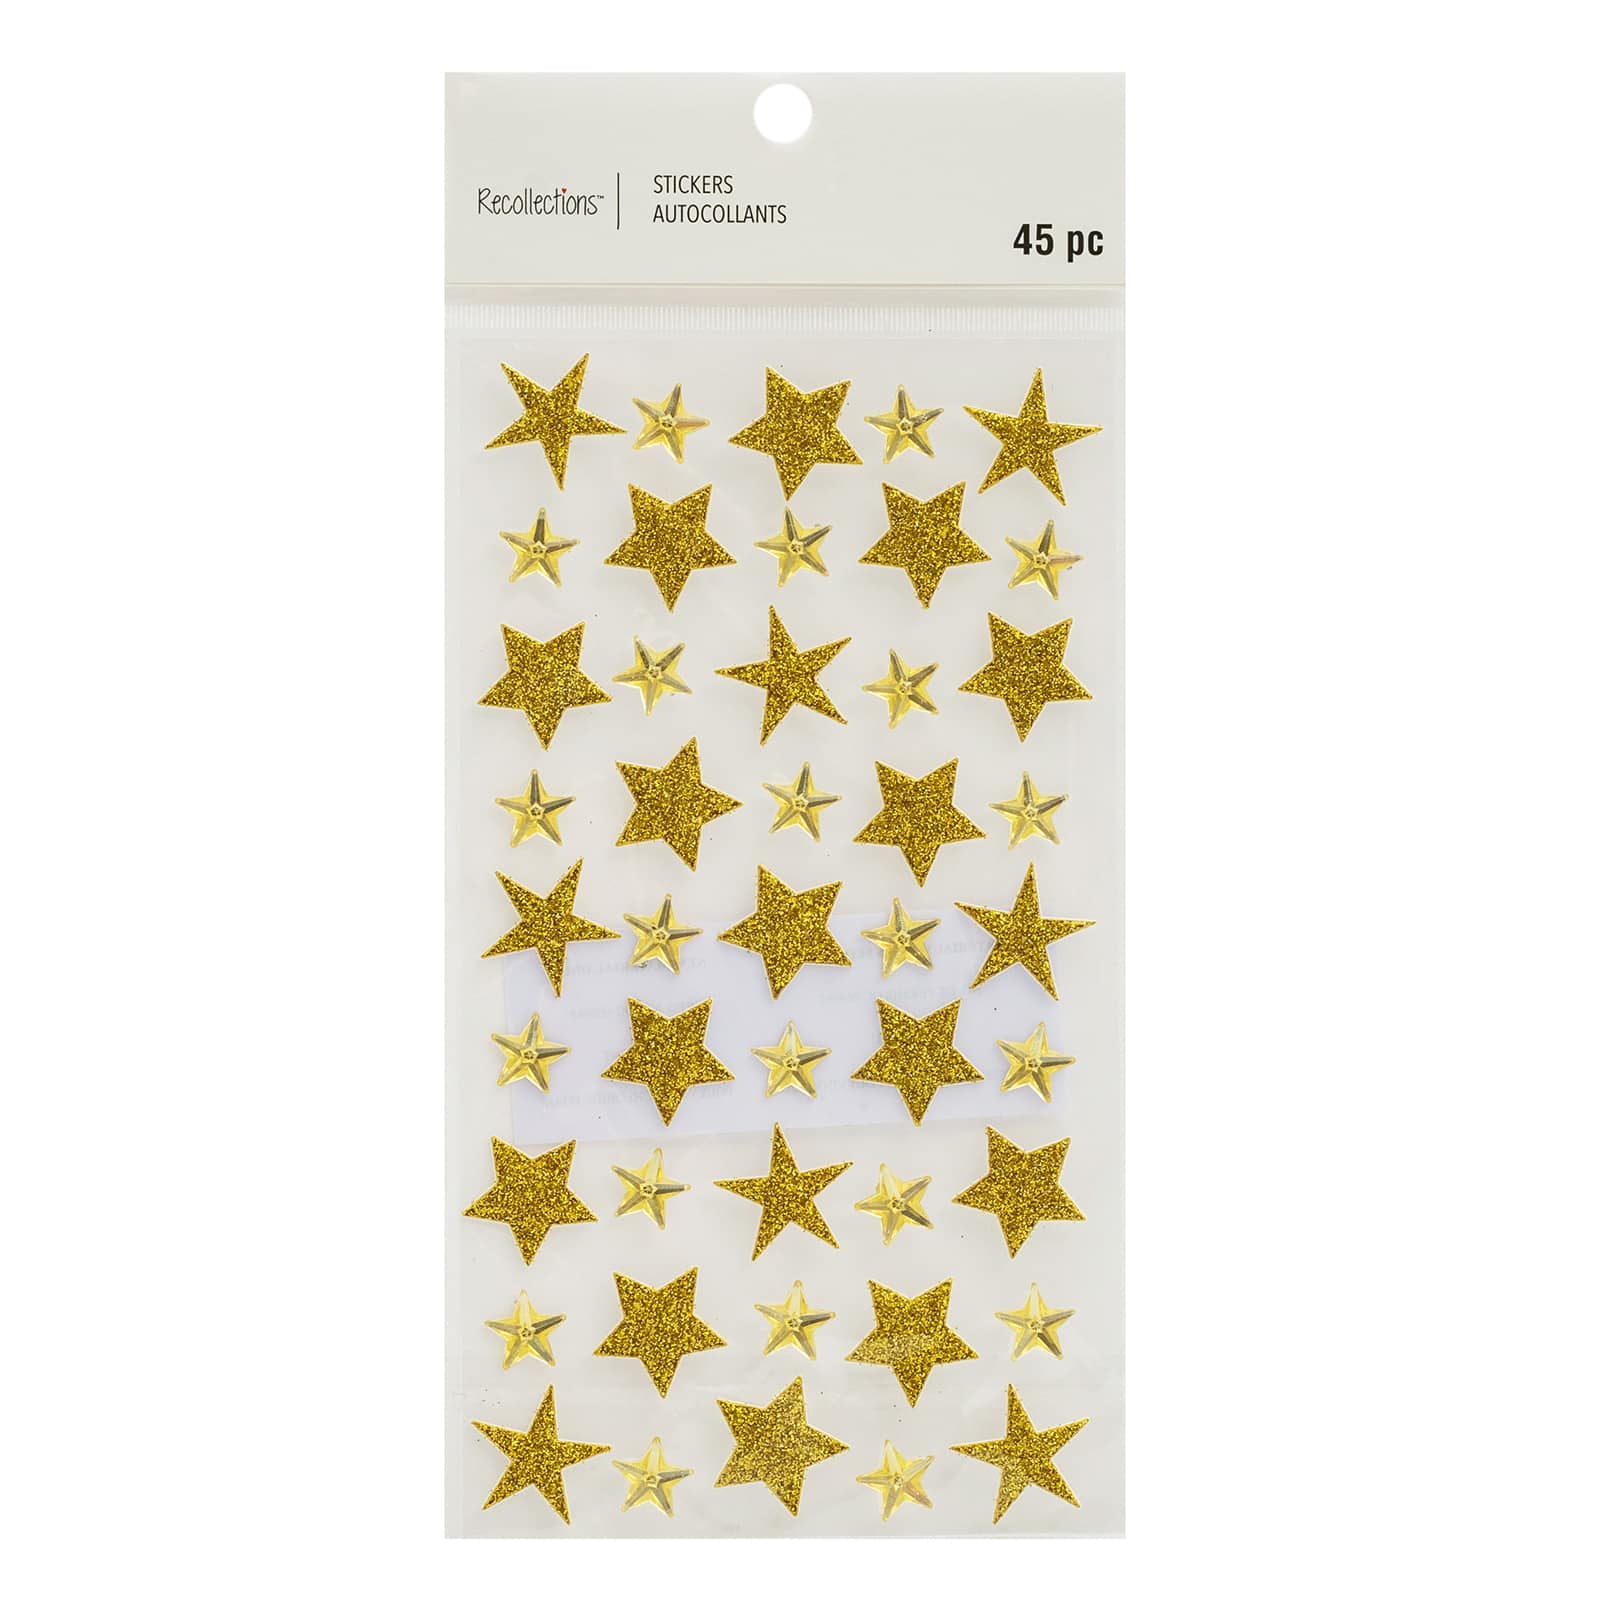 Glitter Stars Trio Sticker for Sale by Designs111